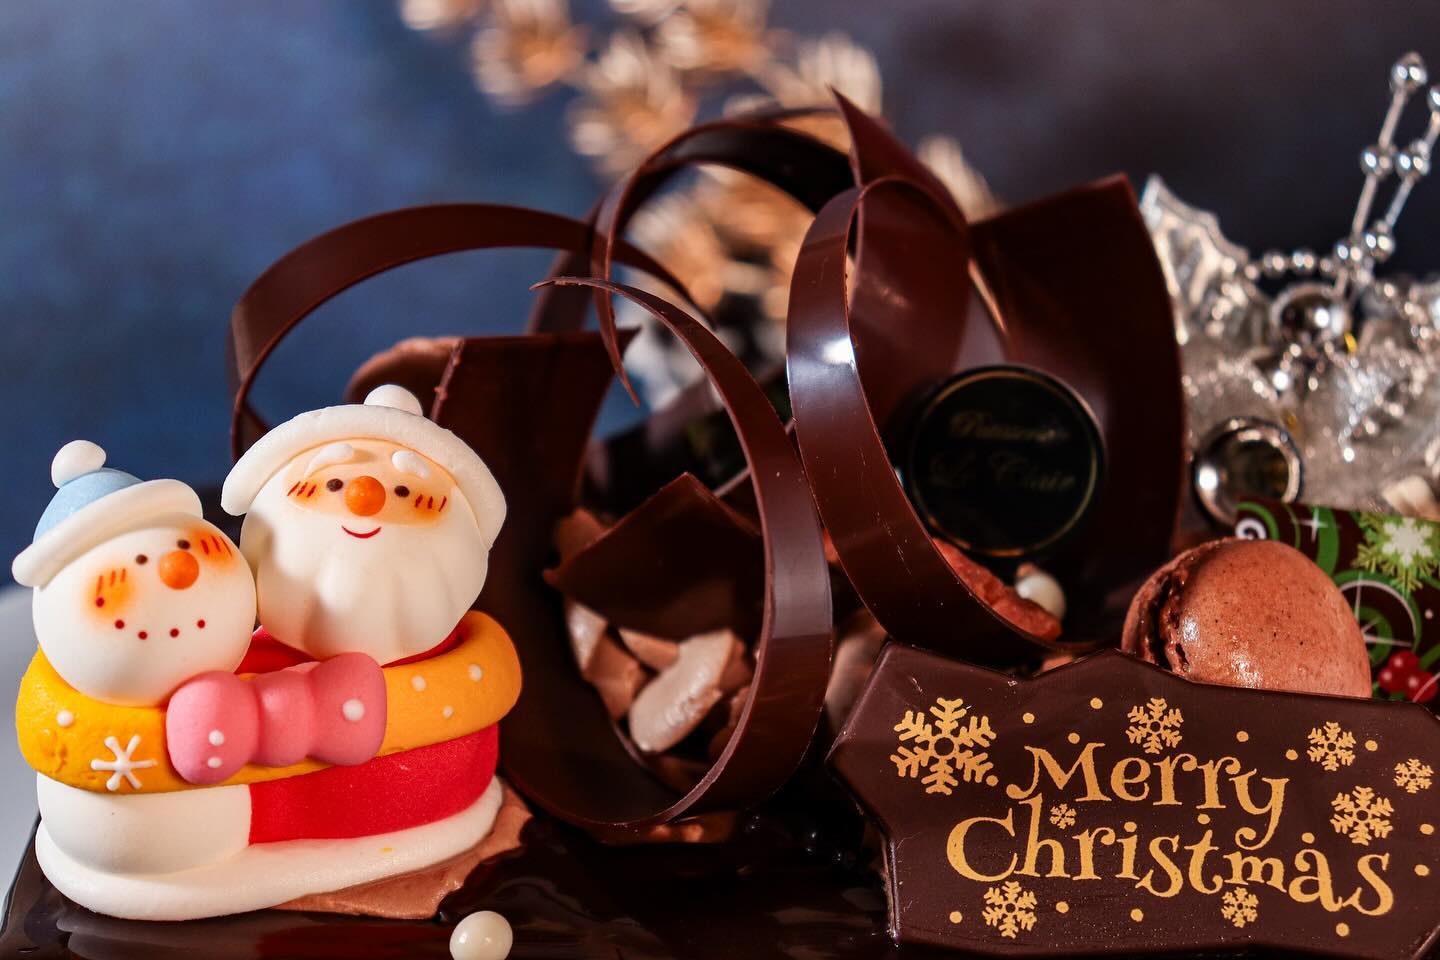 クリスマスケーキ　NO.5

X'masショコラ・リュクス

5号サイズ相当(16.5×12cm) 
¥4,000(税込¥4,320) 
限定 250台

ミルクチョコレートムースと 
スイートチョコレートムース
のマリアージュ。 
バニラ香るブリュレと共に 
お楽しみください。